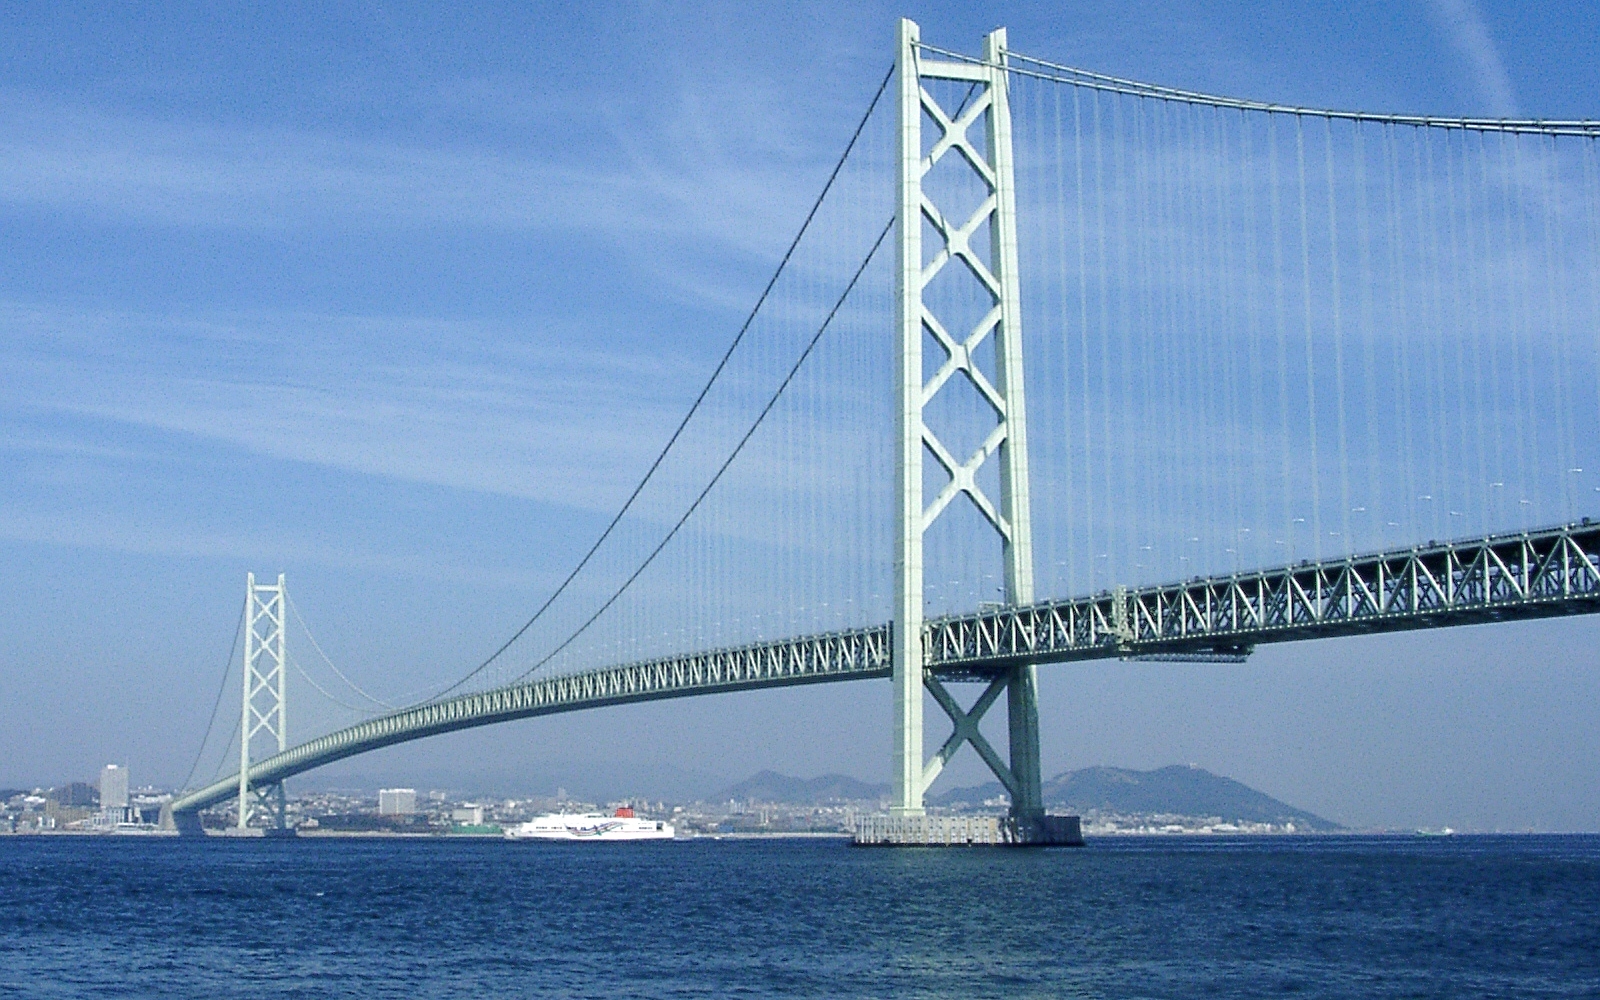 Akashi Kaikyo Bridge #18